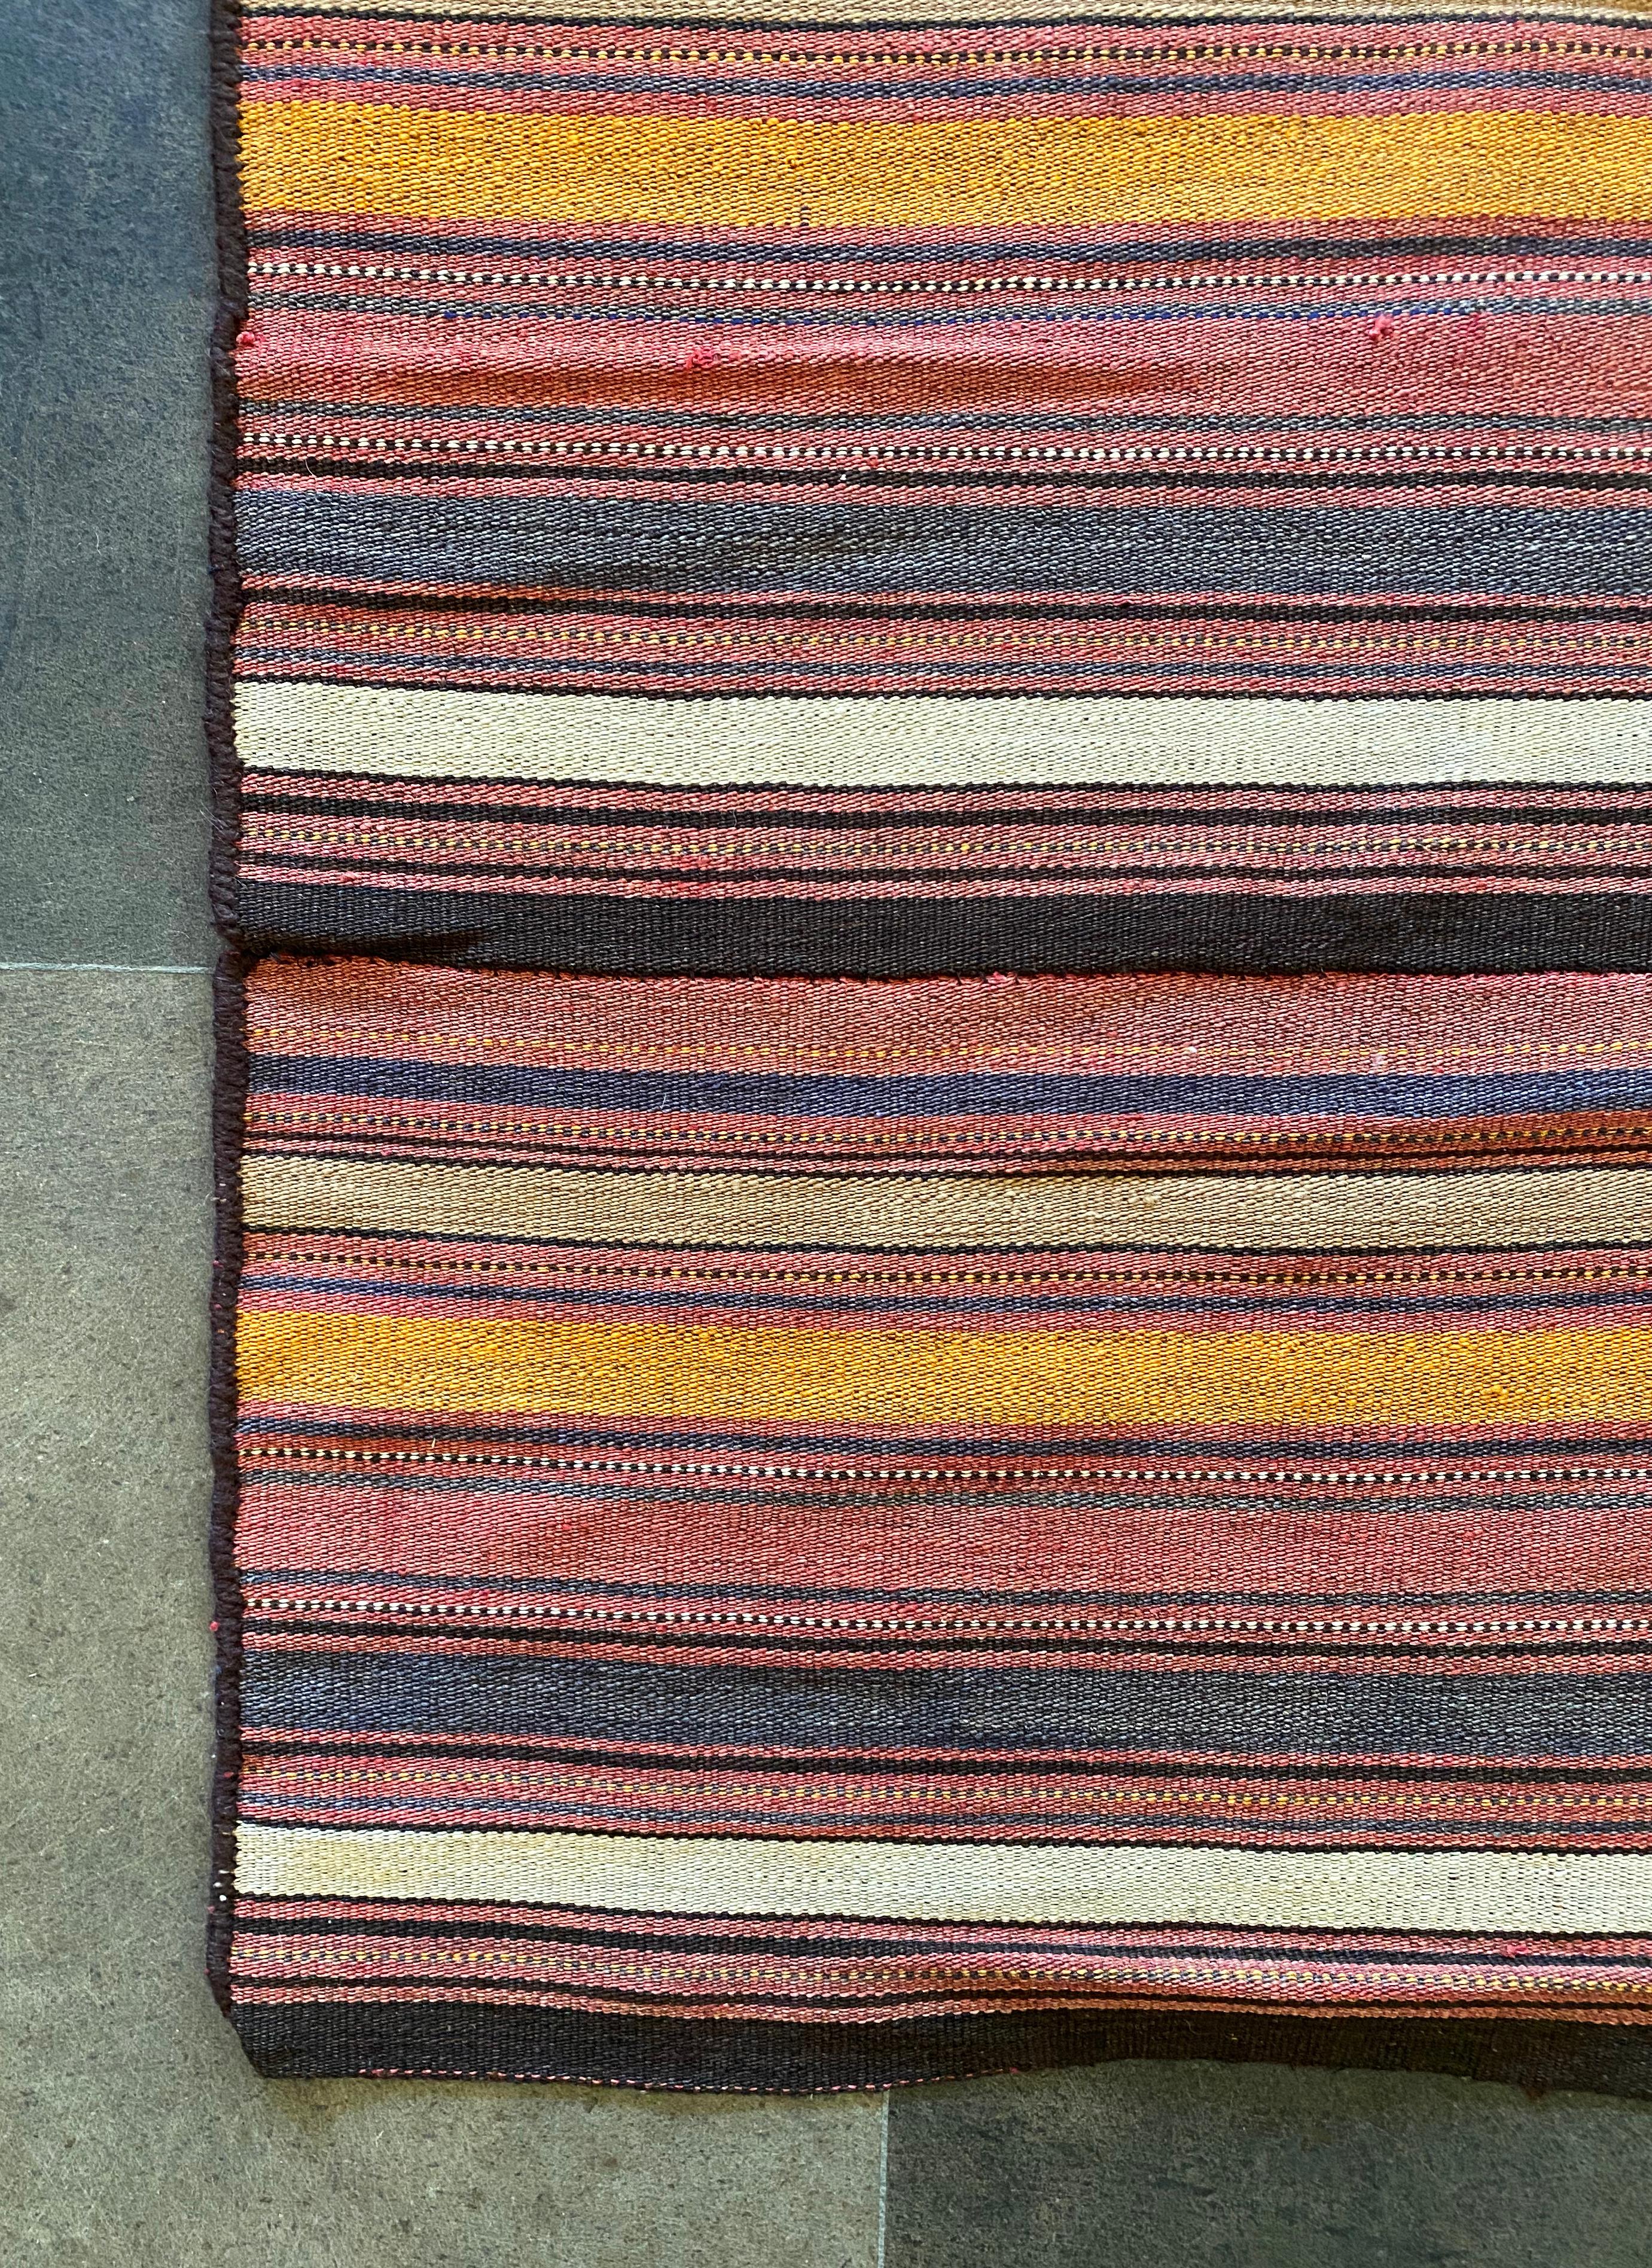 Dieser türkische Klim-Teppich zeichnet sich durch eine atemberaubende Mischung aus natürlich gefärbten Wollstreifen in orange, rot, schwarz und cremefarbener Farbe aus. Sie stammt aus dem frühen 20. Jahrhundert. Die Originalfarbe ist altersbedingt